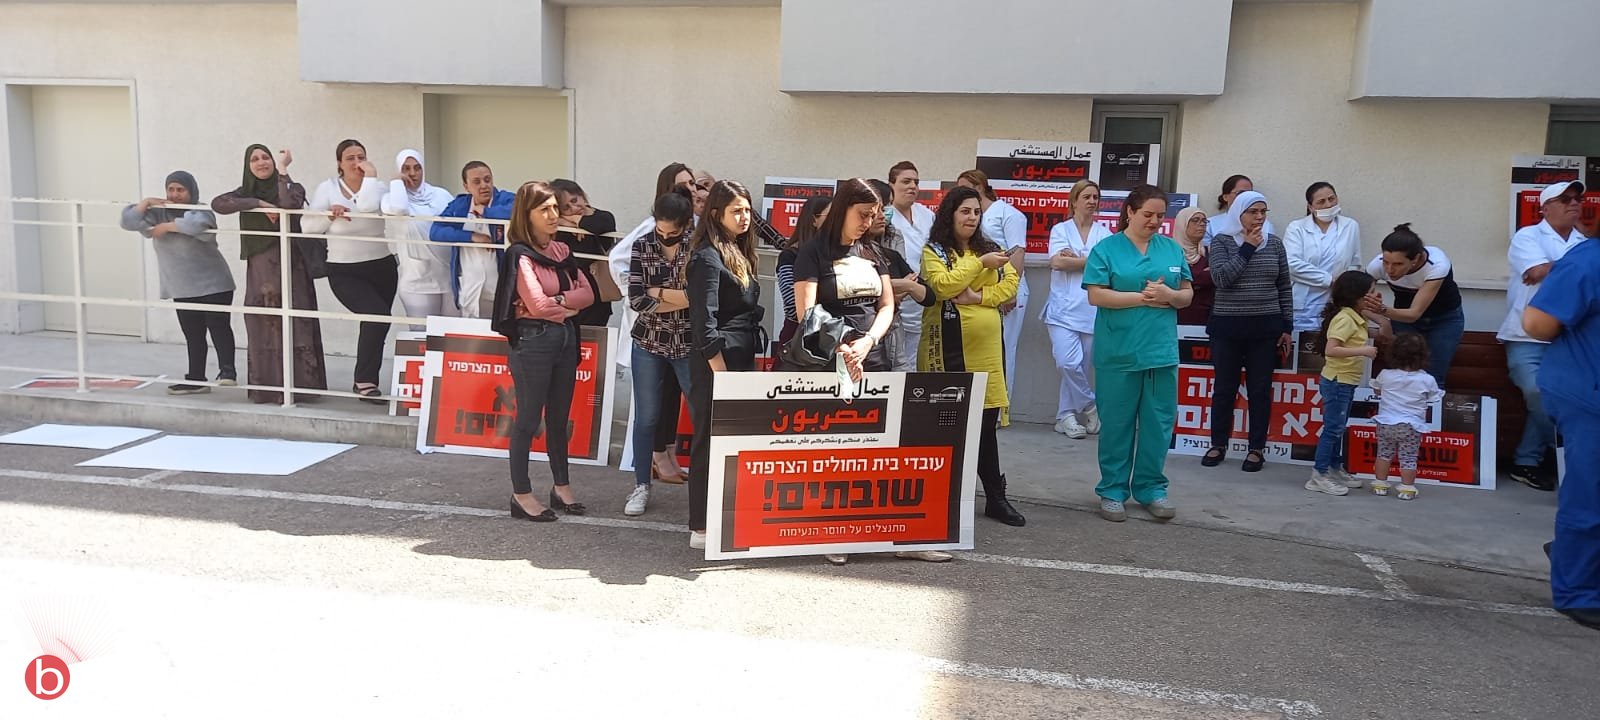 بعد مطالبات بتحسين ظروف العمل - إضراب عاملي المستشفى الفرنسي في يومه الثامن-2